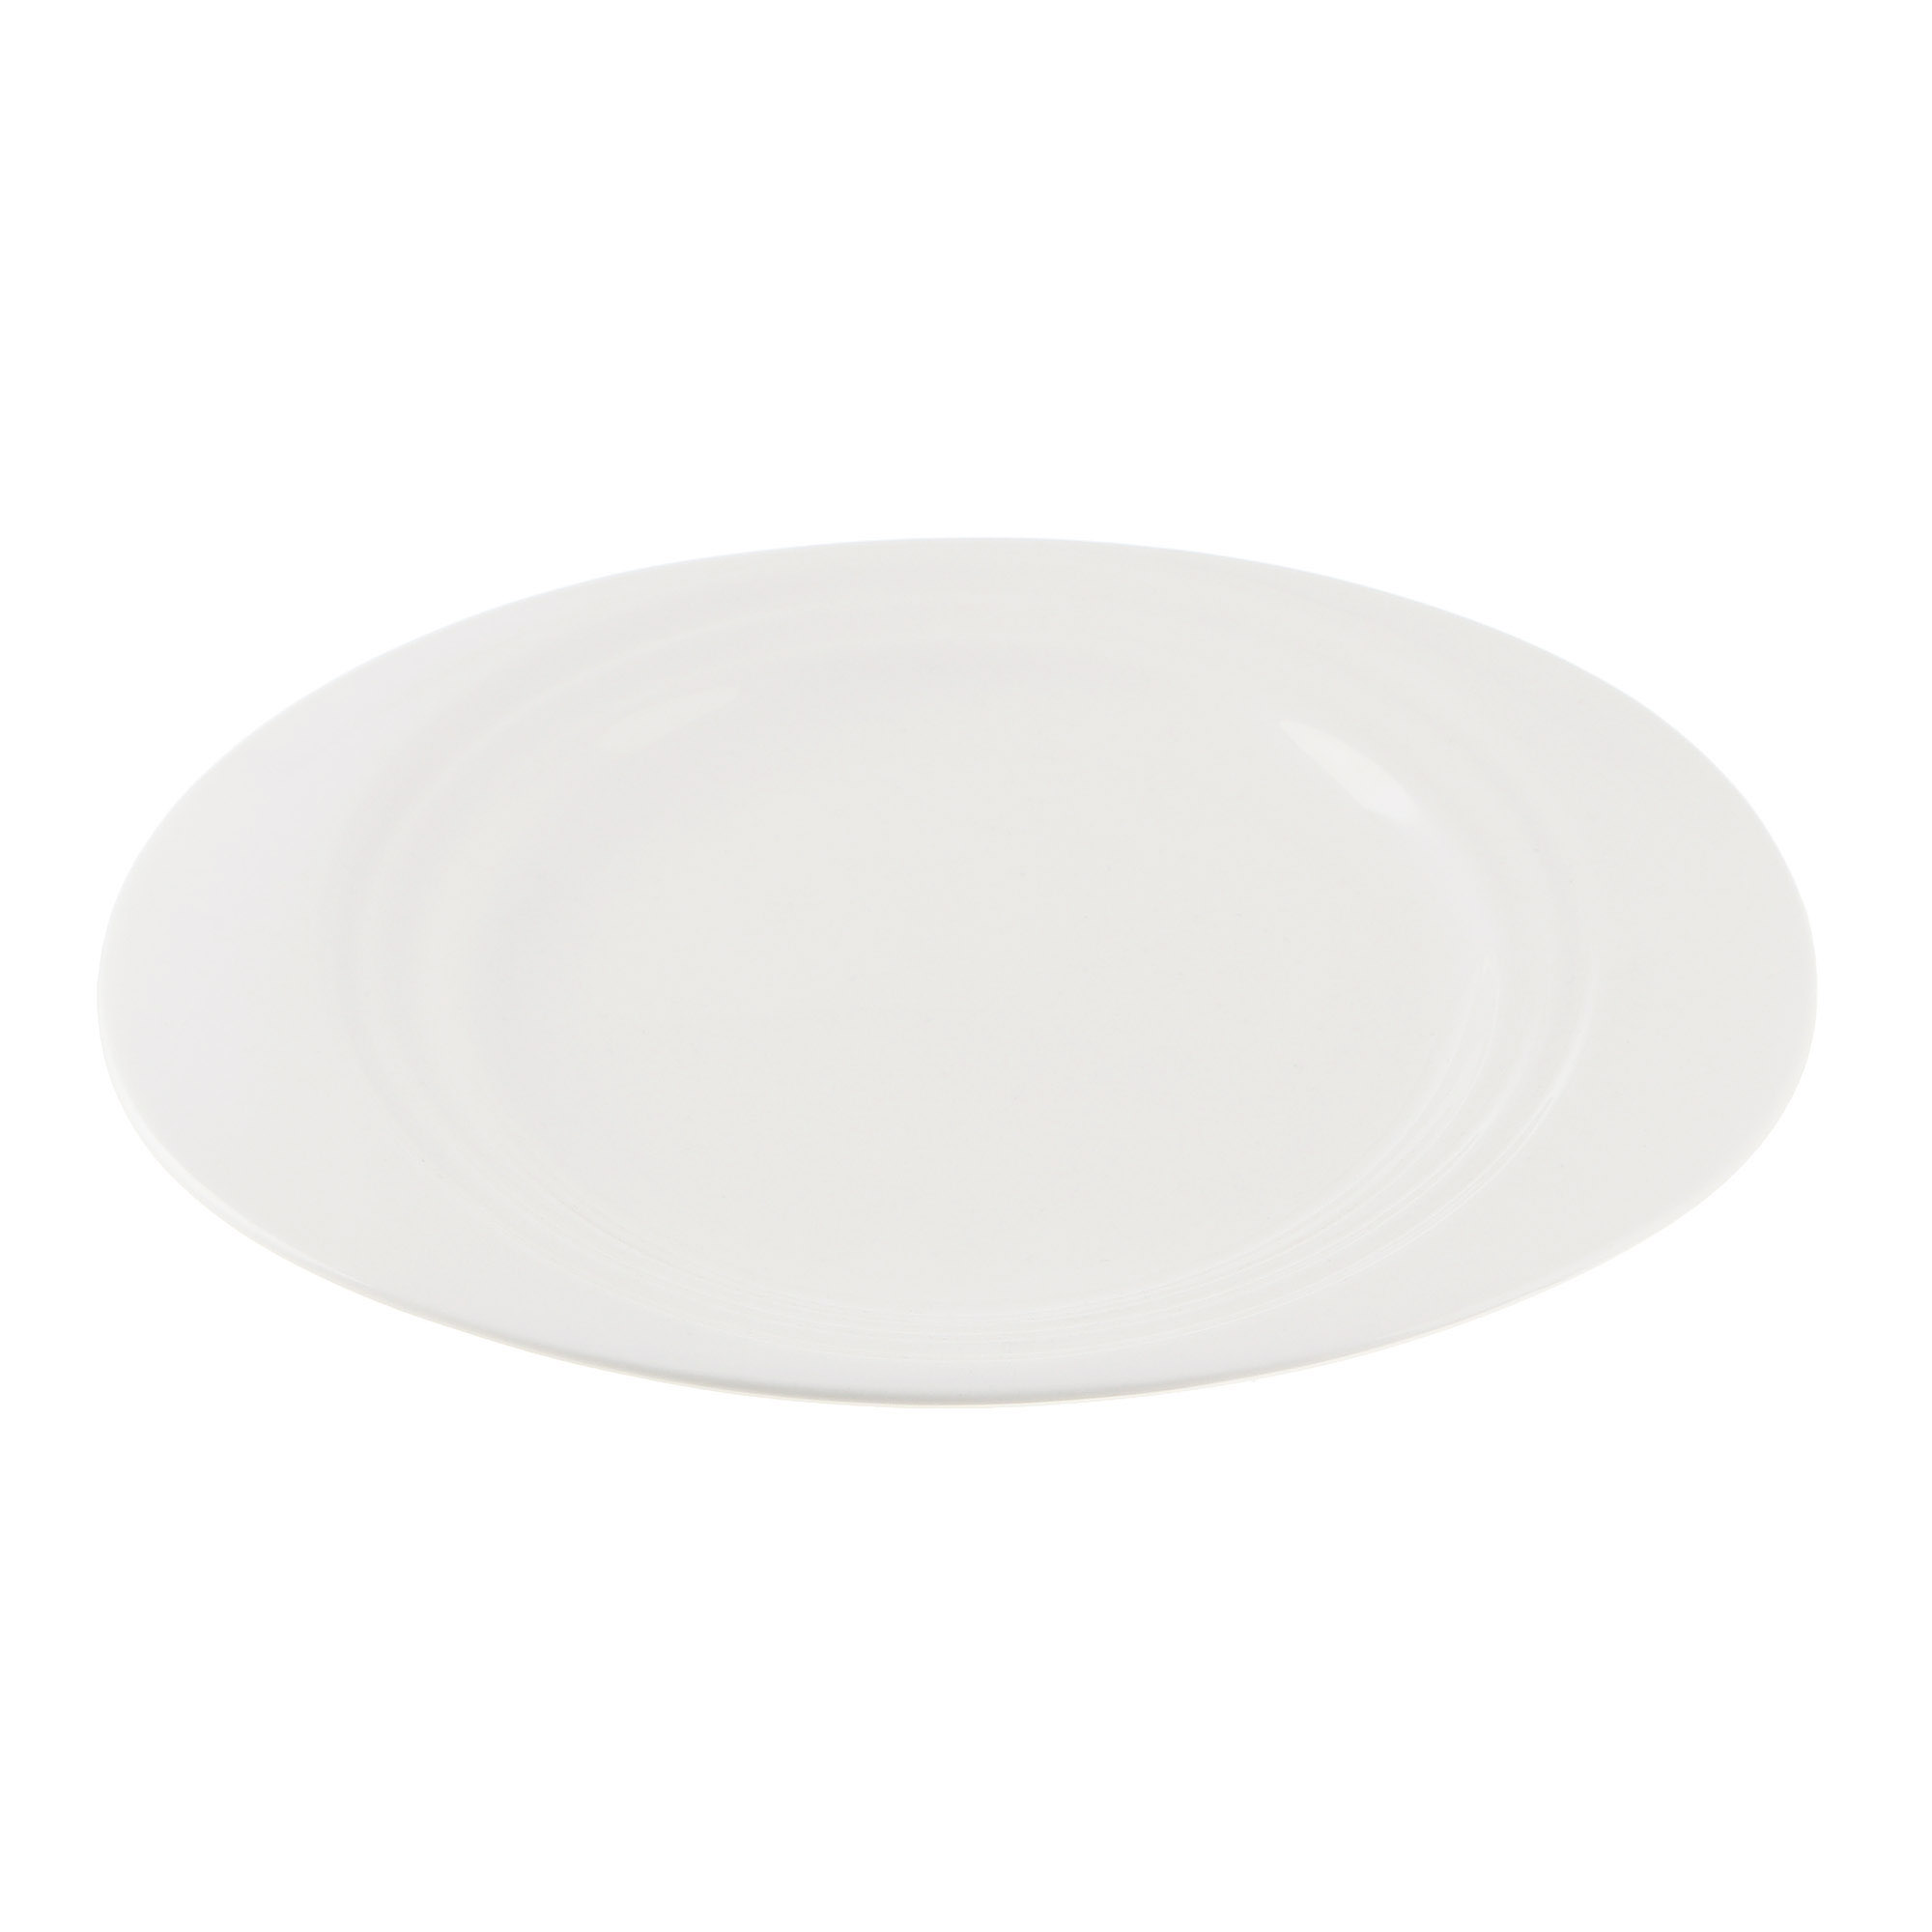 Тарелка Cameo Concentrics фарфор 28,2 см тарелка cameo dynasty для пасты d30 см 610 v122